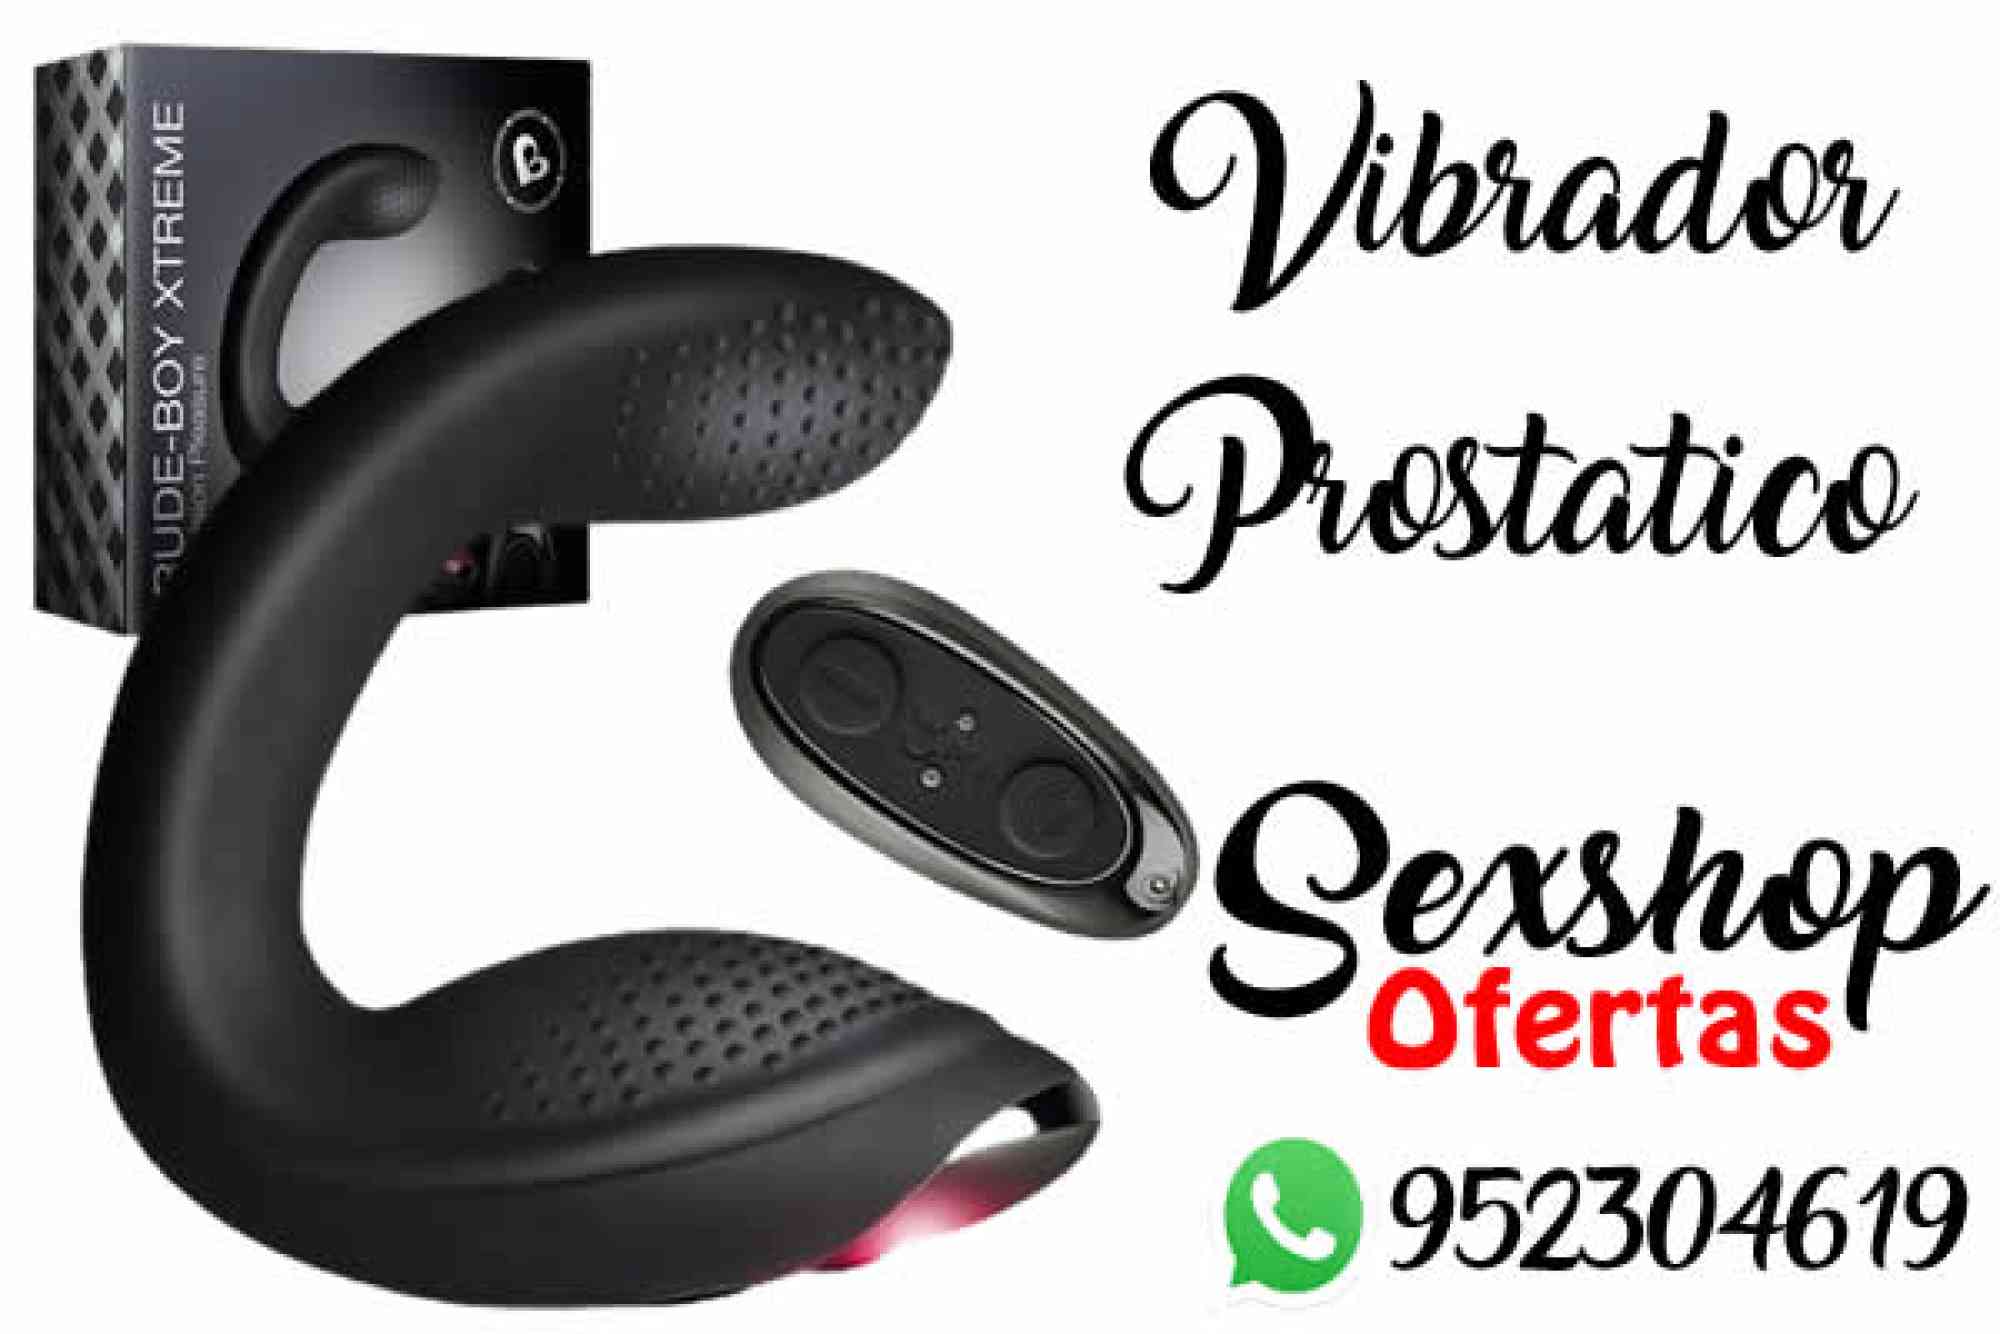 VIBRADOR PROSTATICO - SEXSHOP LINCE en venta